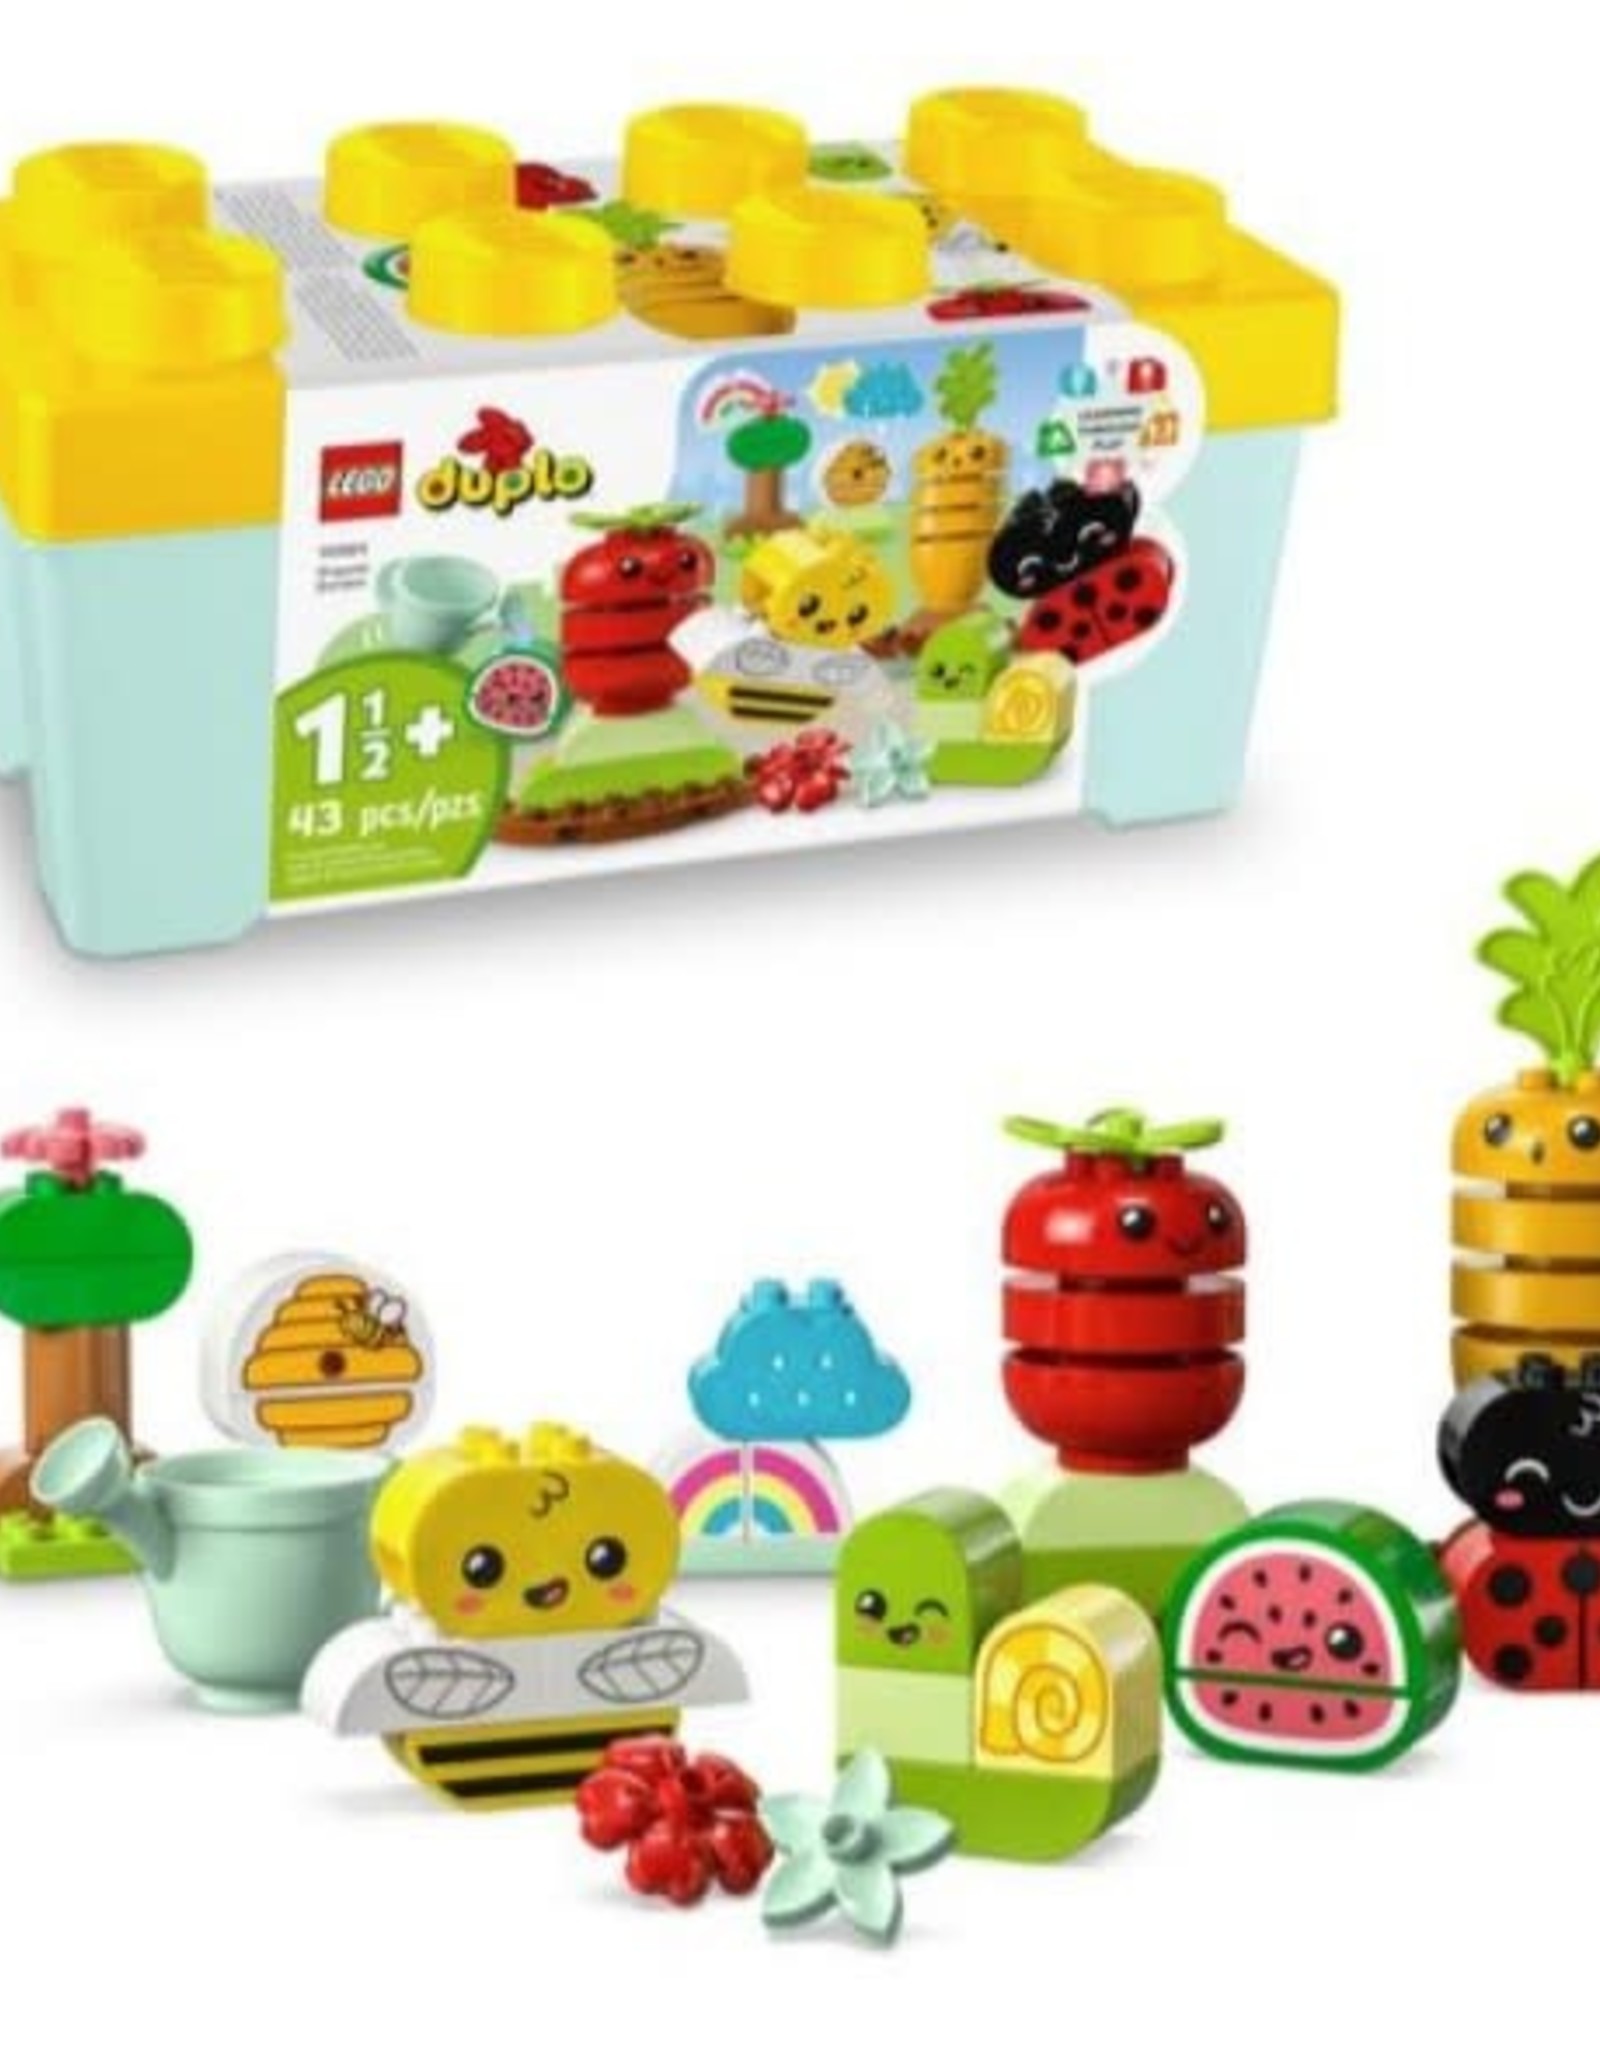 LEGO 10984 Organic Garden